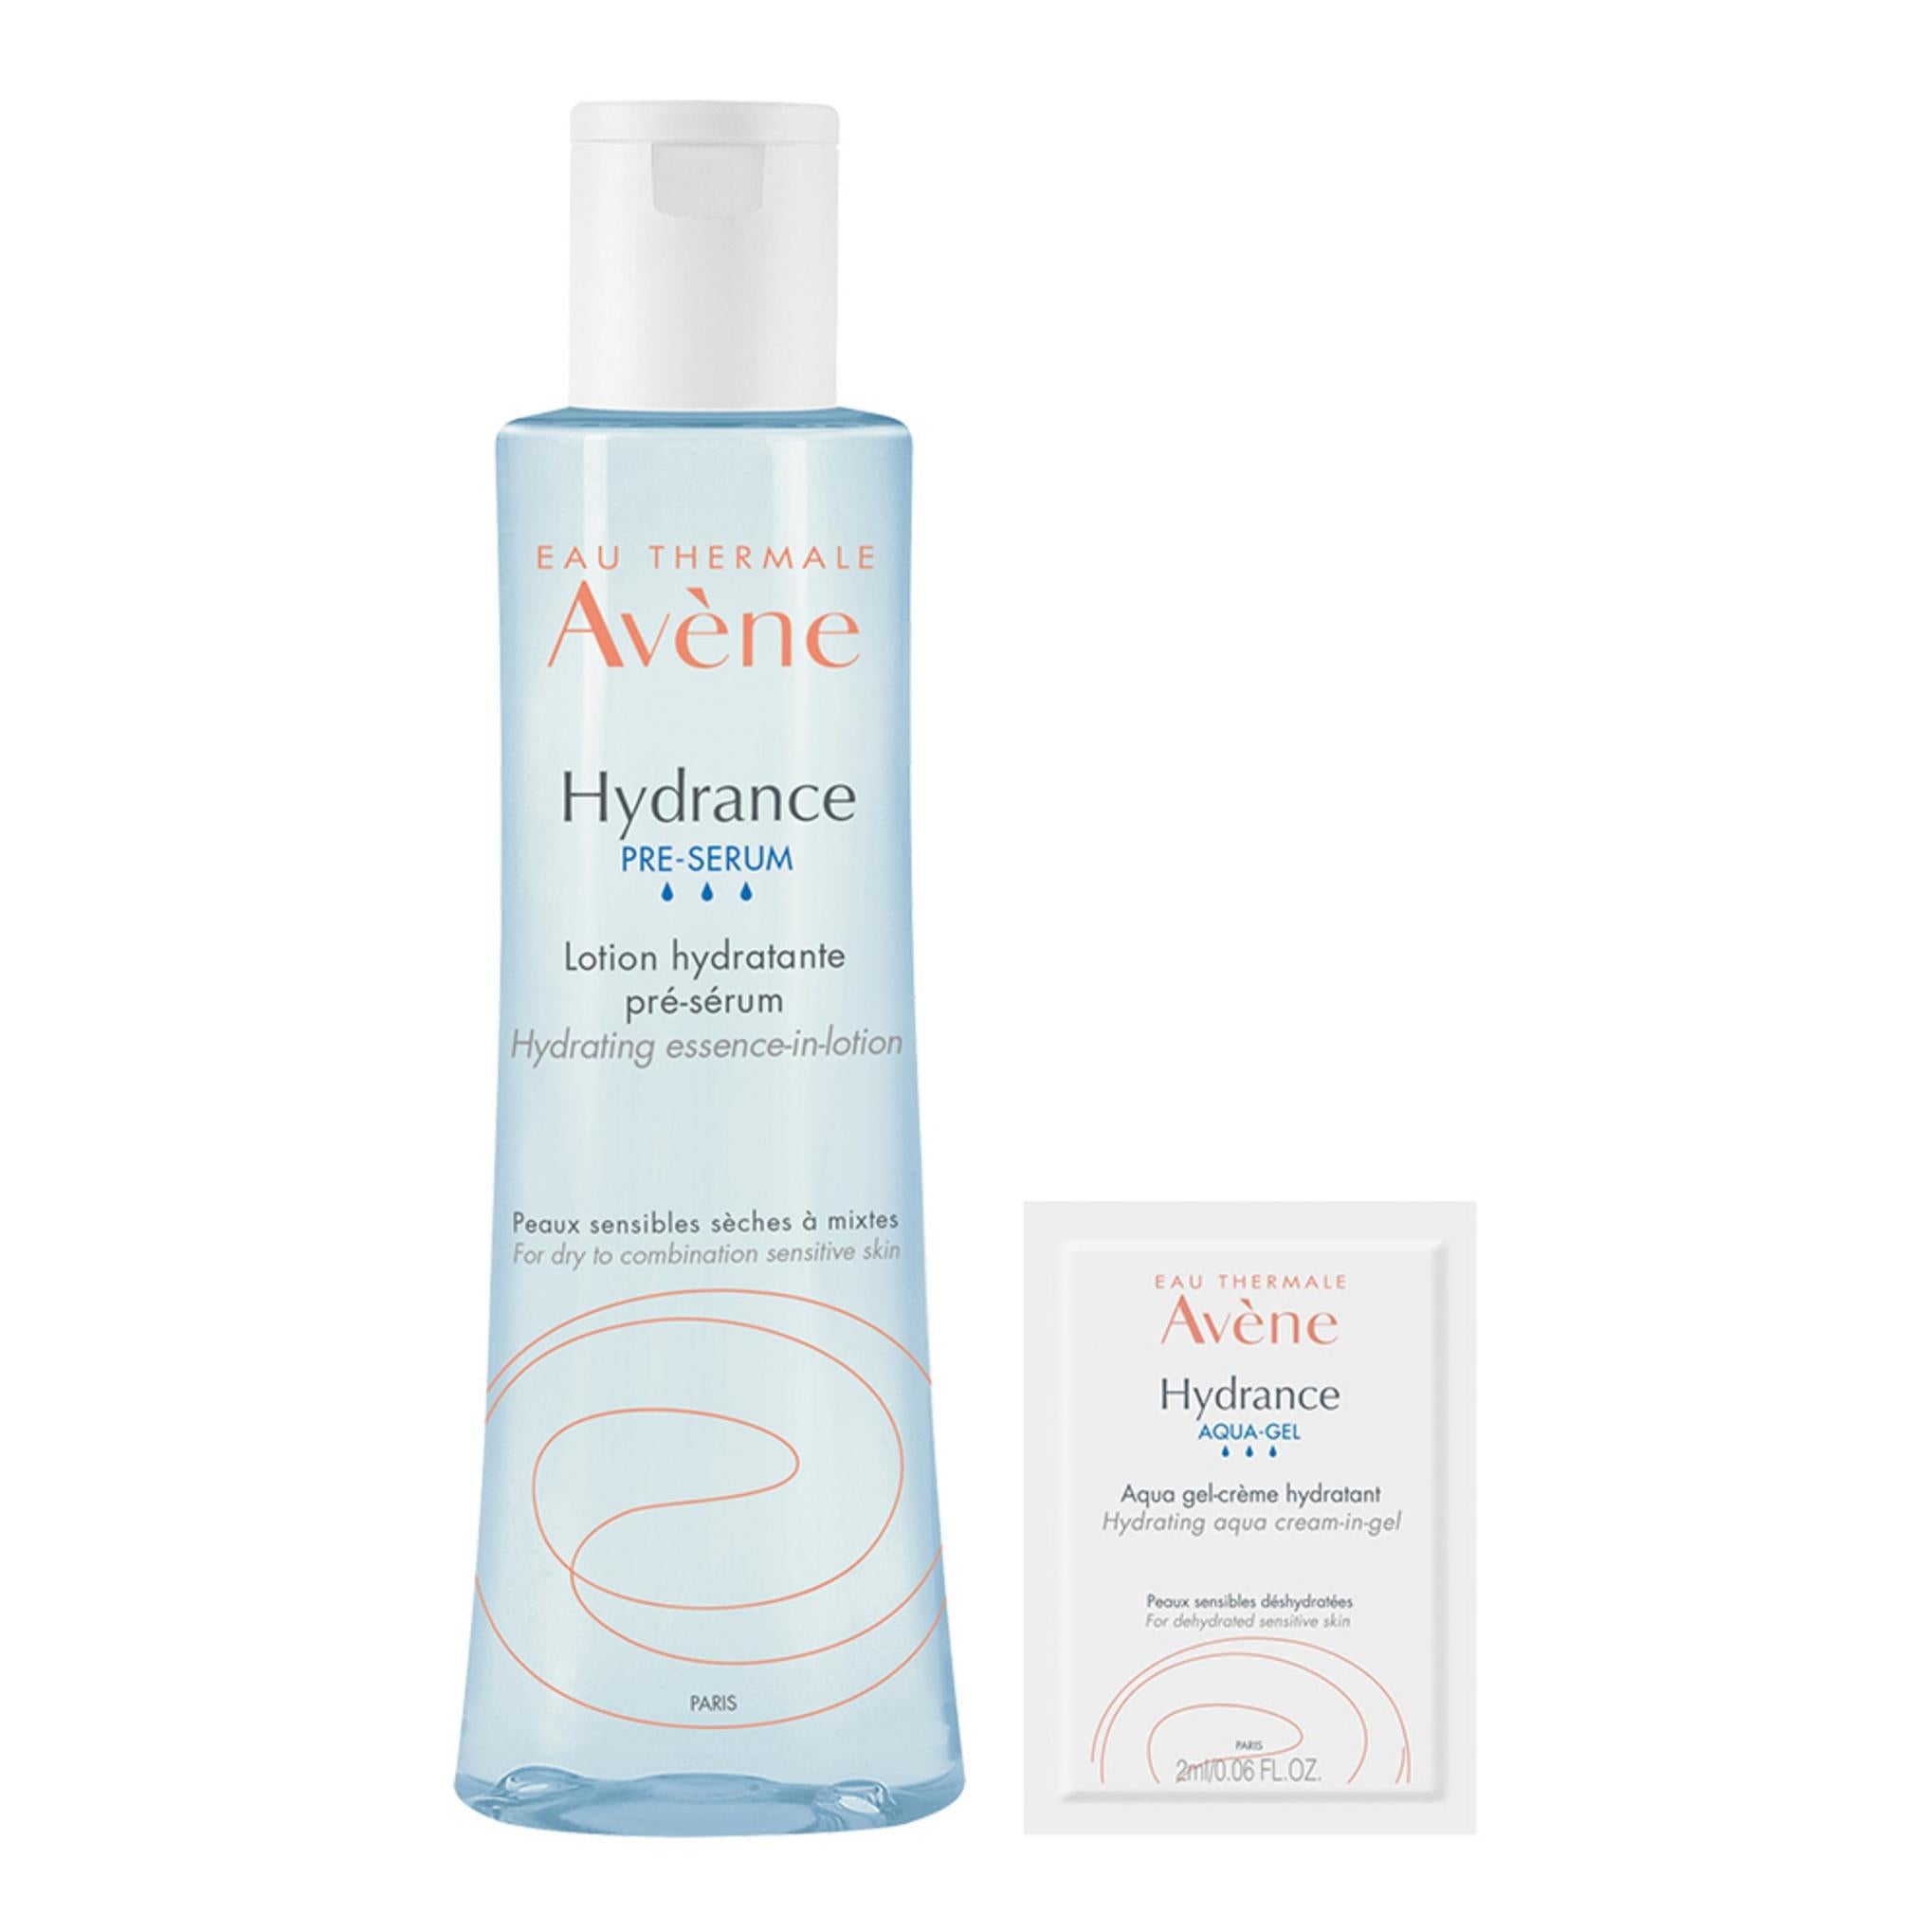 Avene Hydrance Essence in Lotion 200ml + Aqua Cream in Gel 2ml Set